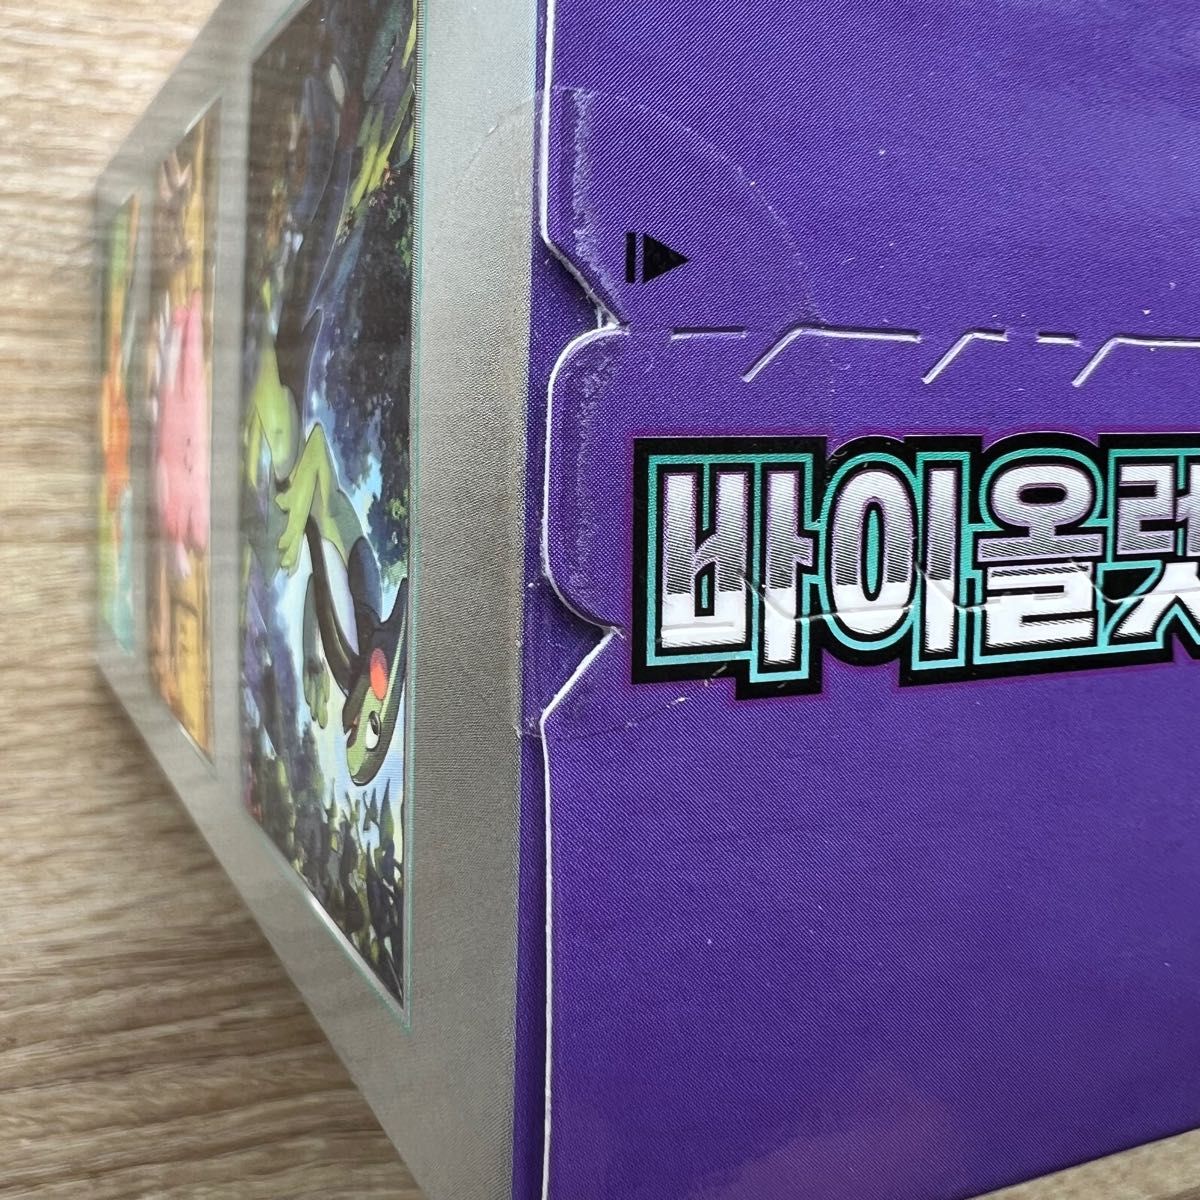 ポケモンカード シュリンク付き イーブイヒーローズ 1BOX + バイオレットex 1box 海外版 韓国版 新品未開封